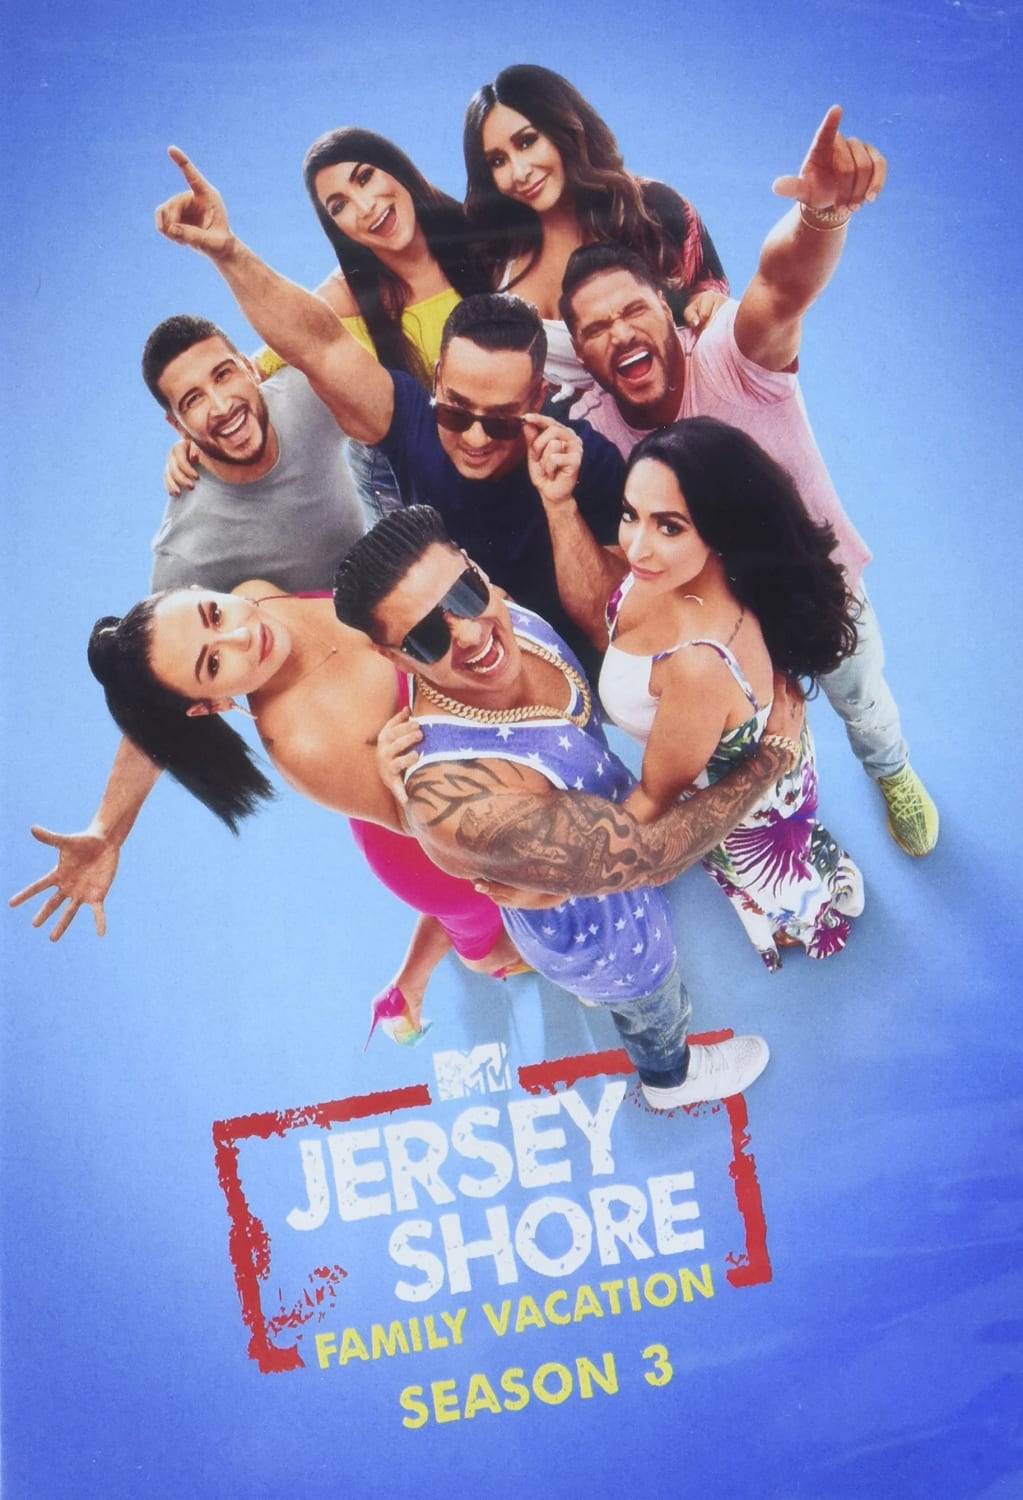 Jersey Shore Family Vacation: Season 3 (DVD) on MovieShack